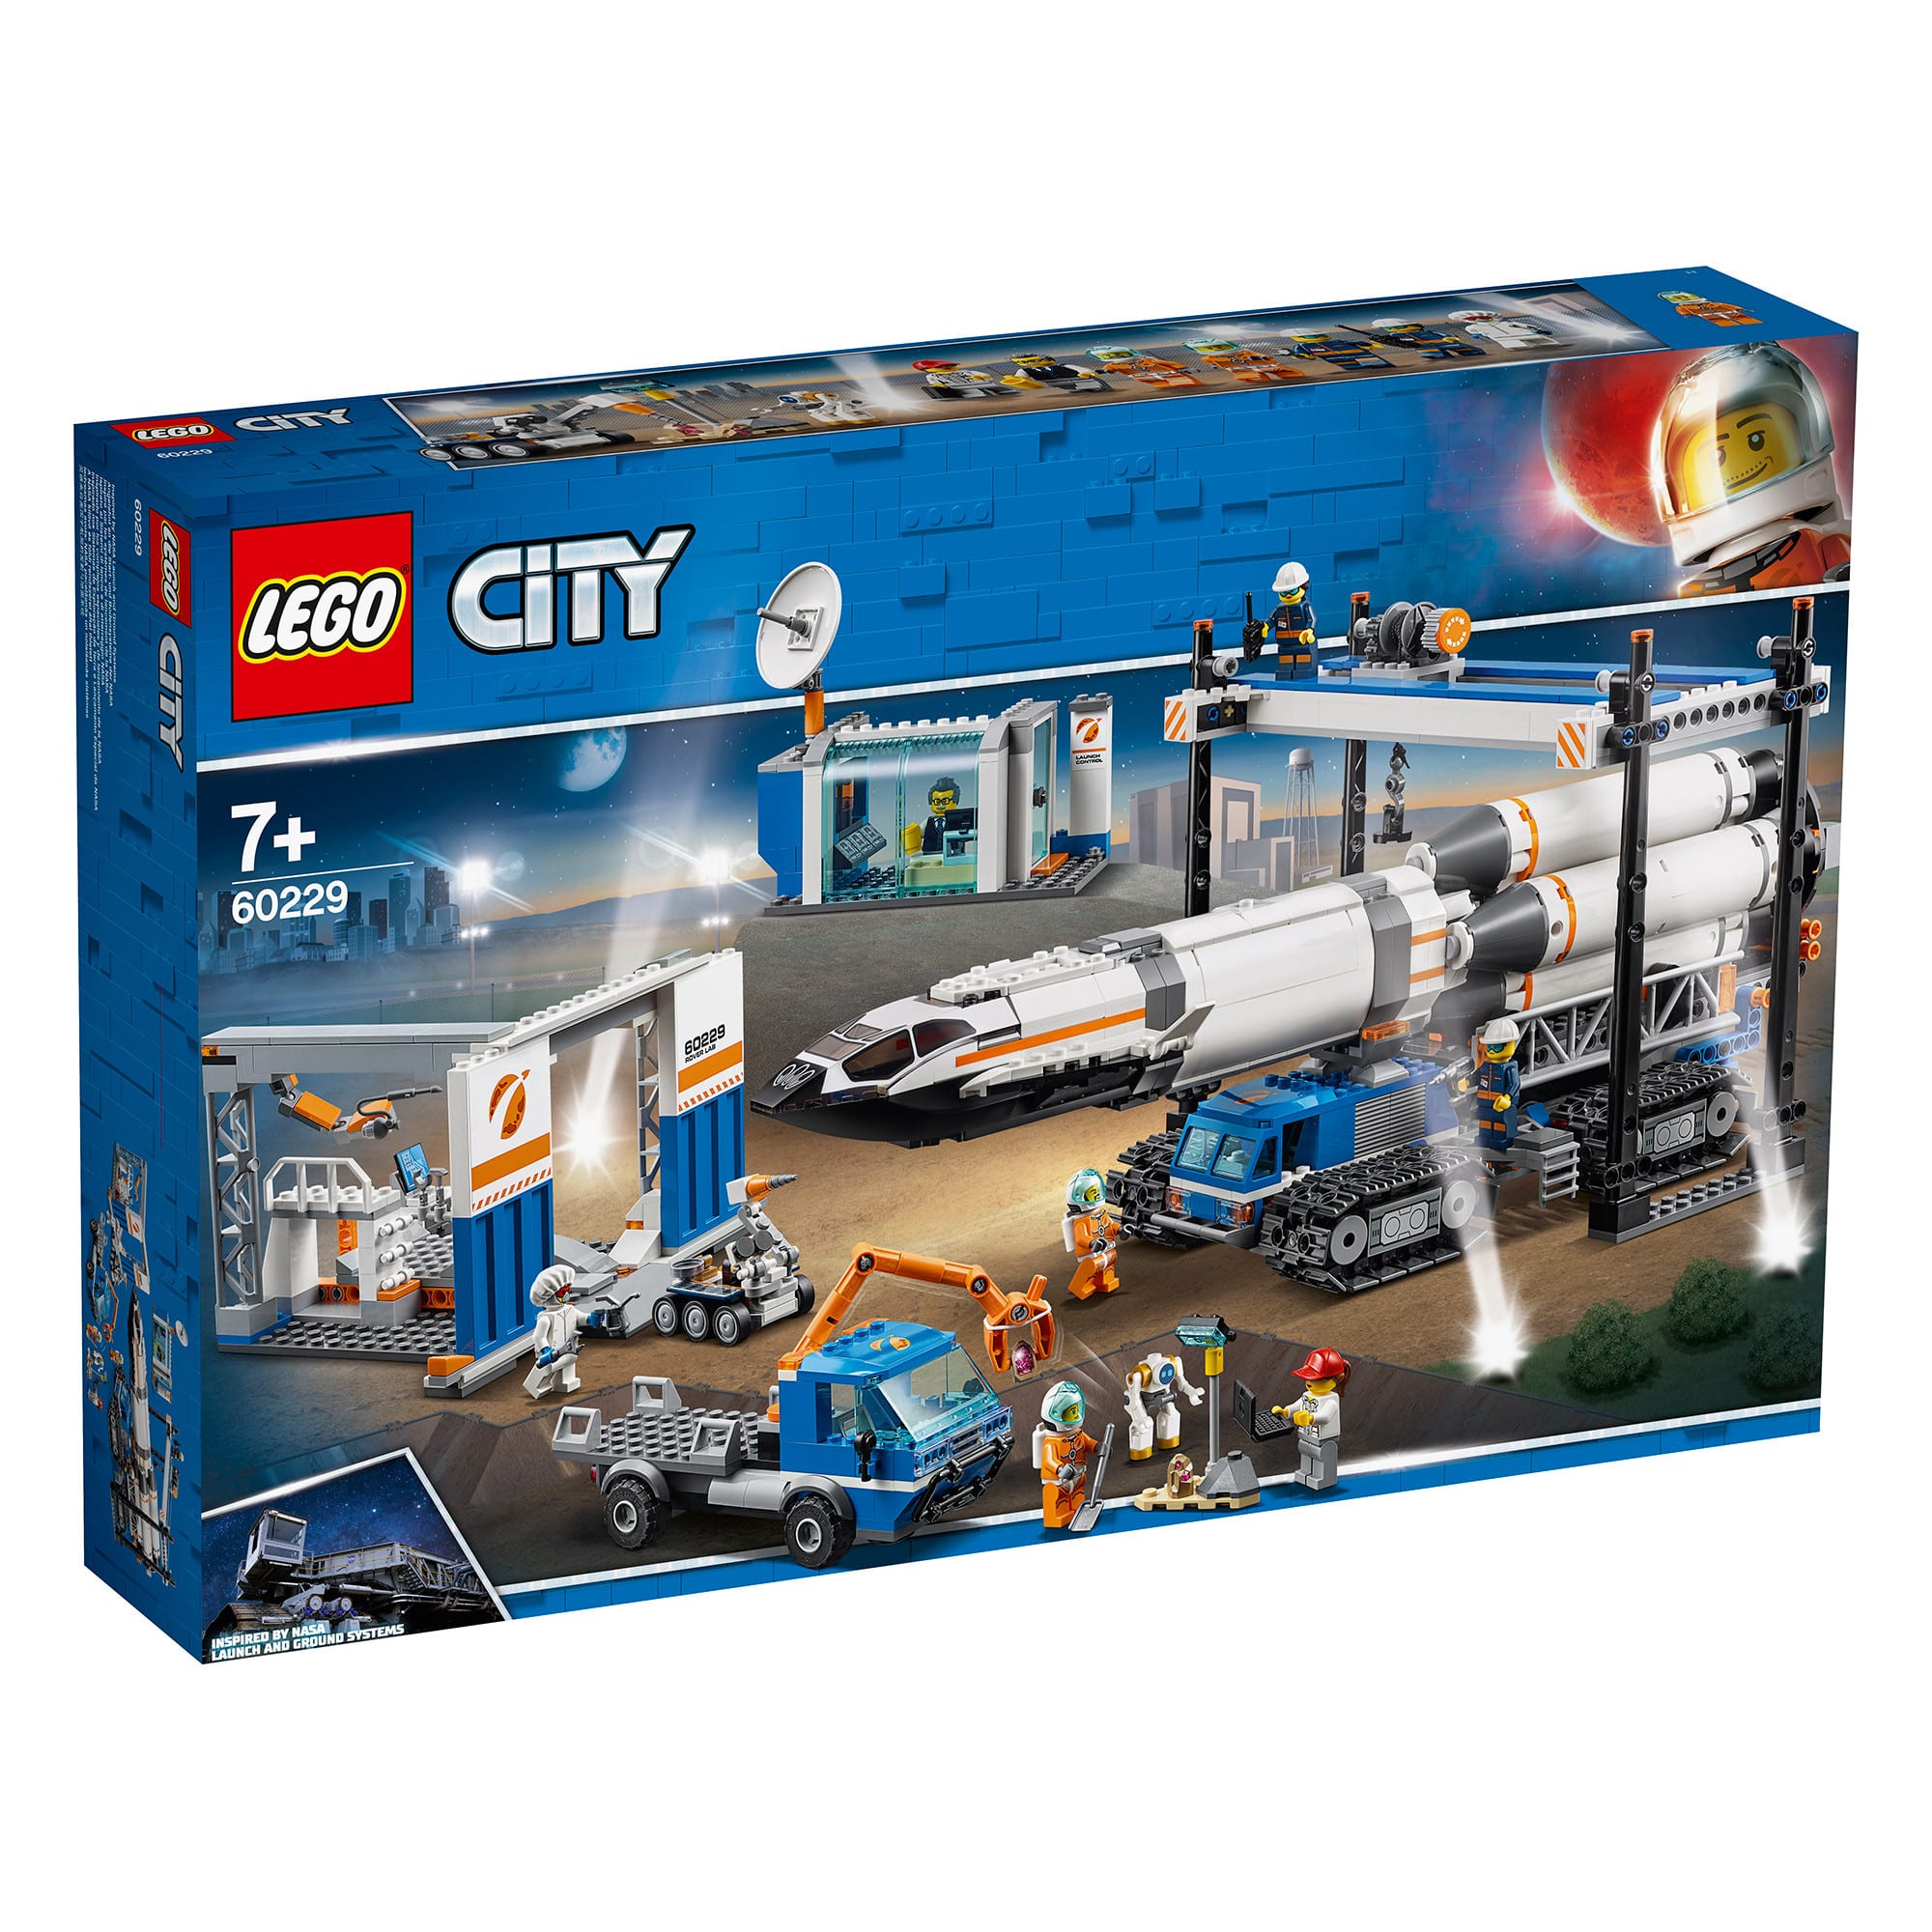 LEGO City - 60229 Rocket Assembly & Transport